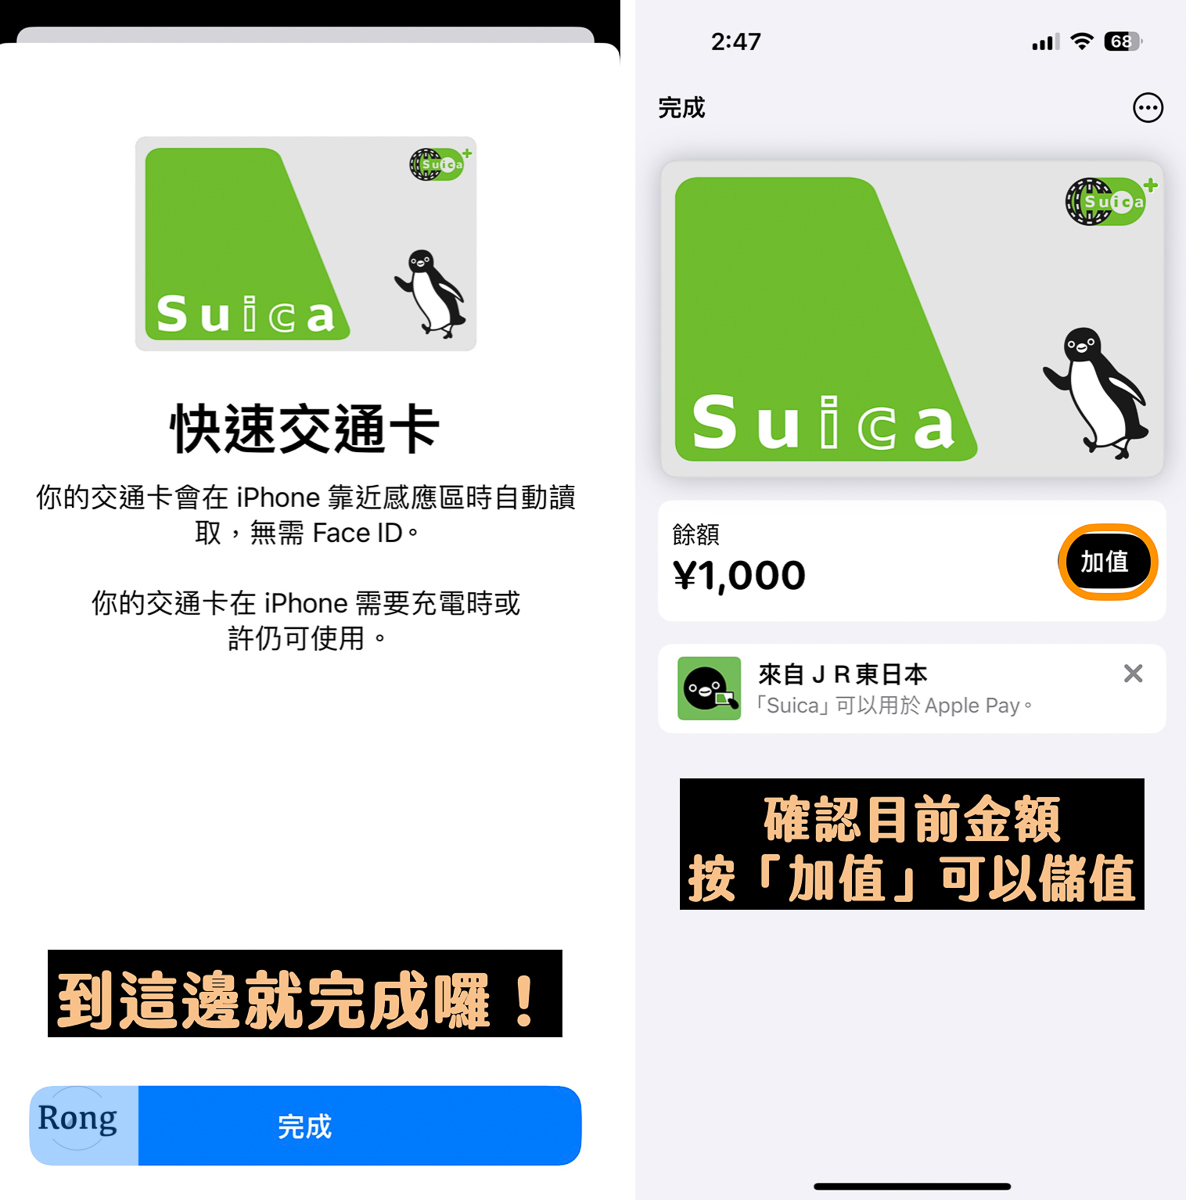 iPhone 綁定 Suica 西瓜卡成功畫面以及儲值按鈕示意